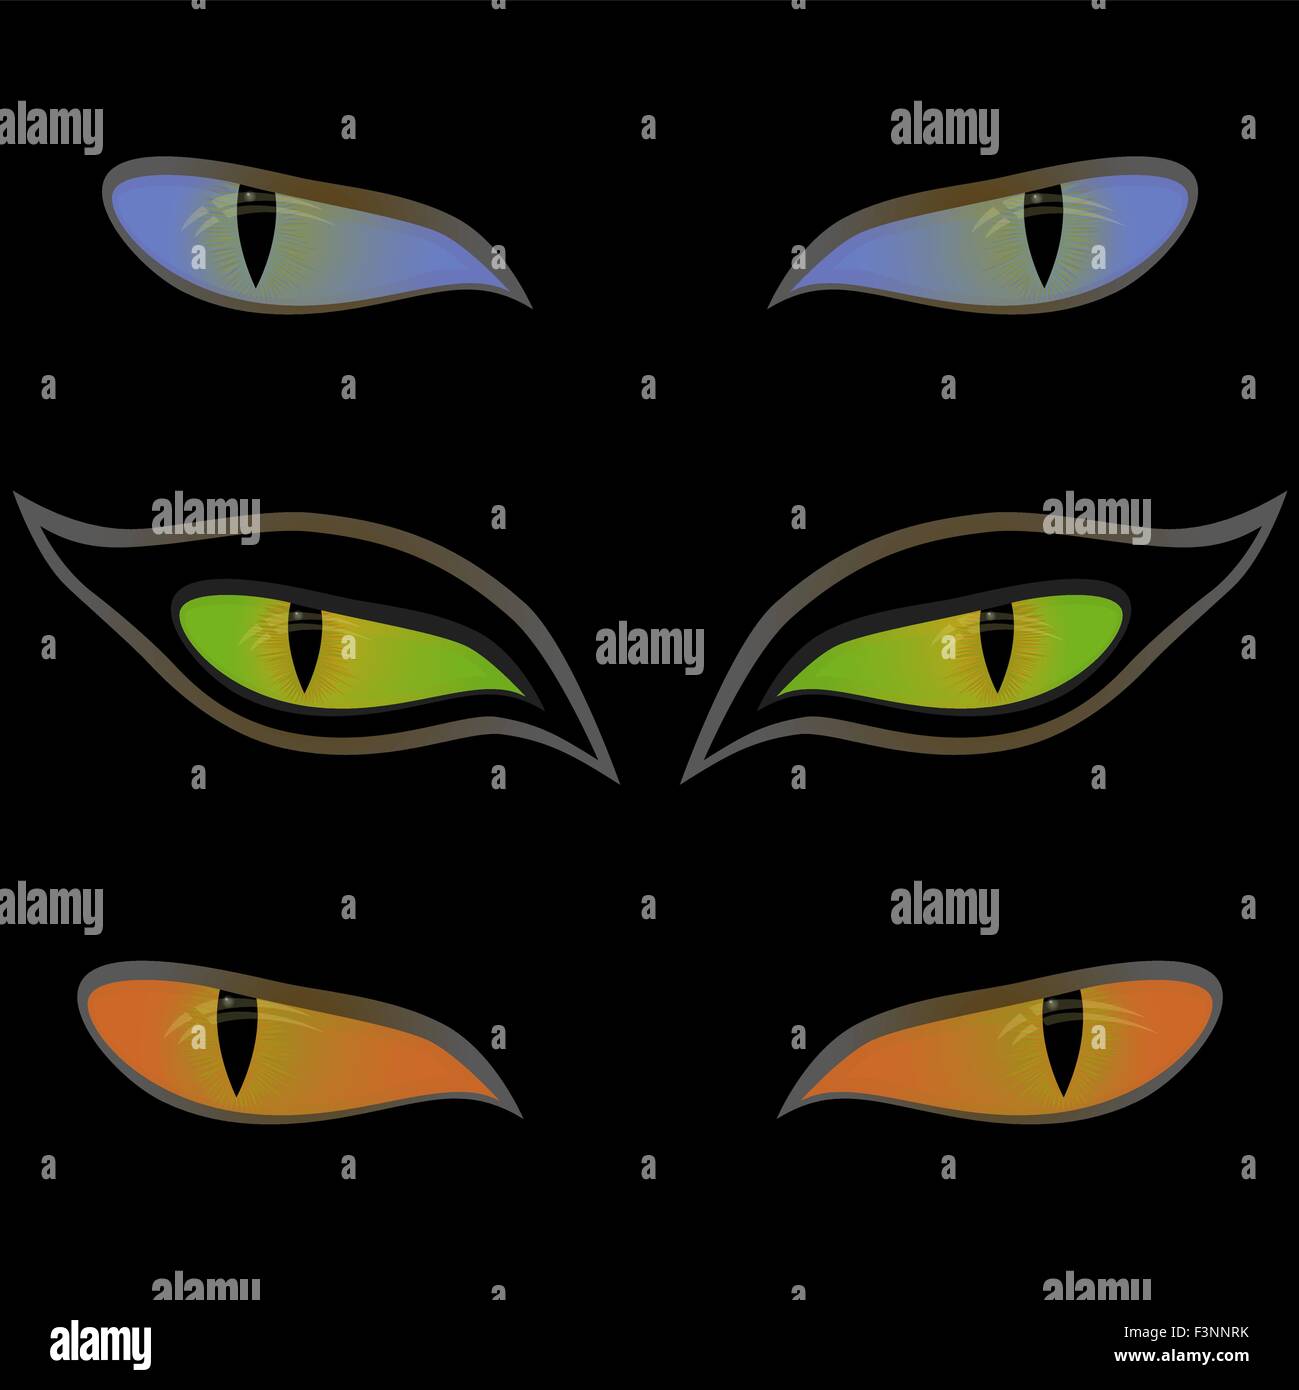 Drei Augenpaare schöne Katze auf einem schwarzen Hintergrund, Handzeichnung Vektor-illustration Stock Vektor